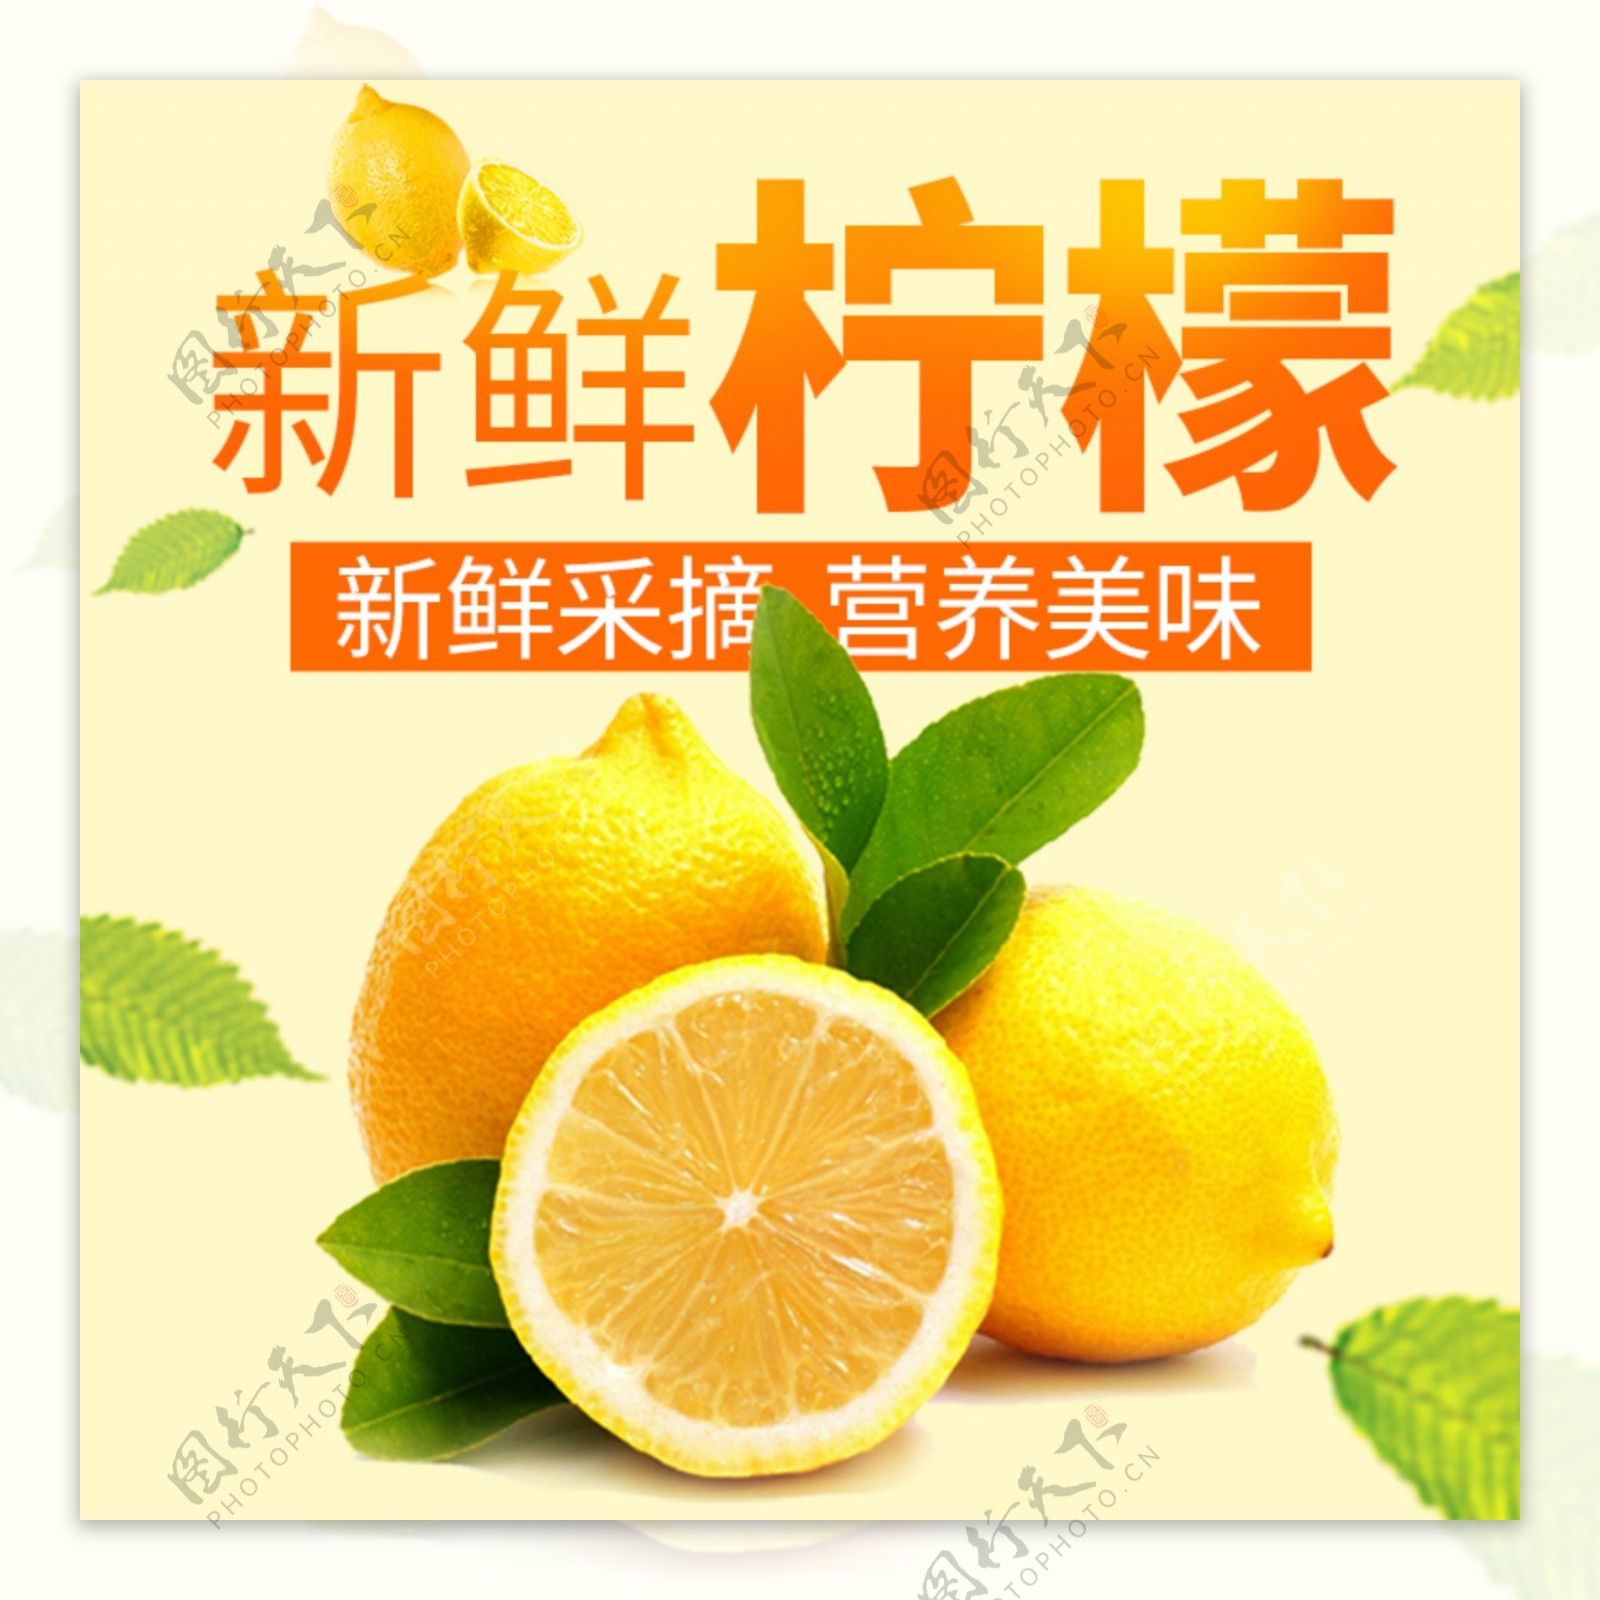 橙色黄色清新水果柠檬淘宝主图psd模板